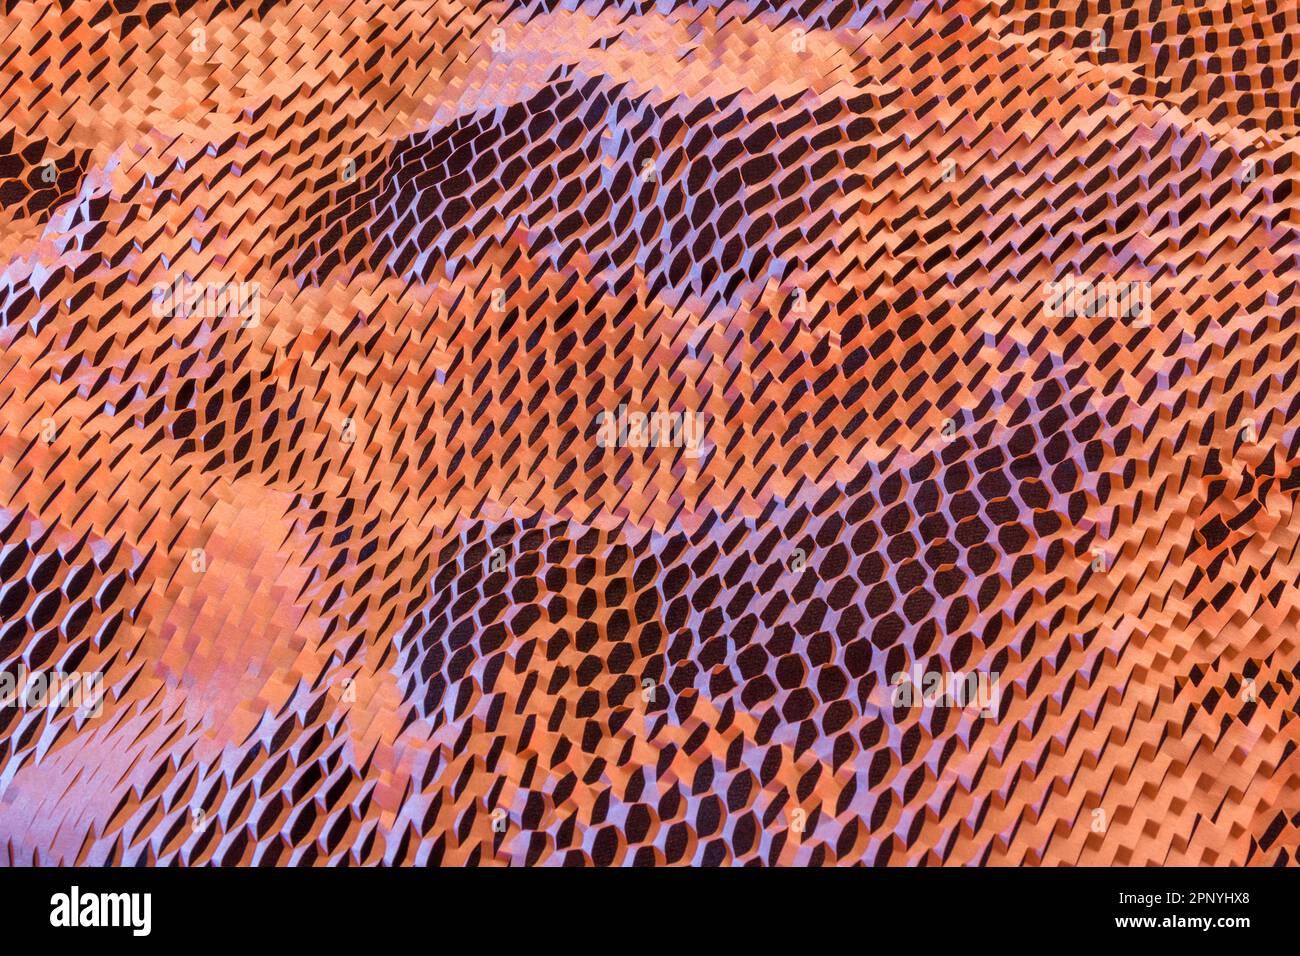 Immagine ravvicinata di carta riempitrice a nido d'ape frantumata utilizzata nei processi di movimentazione dei materiali per la spedizione di merci o prodotti delicati. Foto Stock